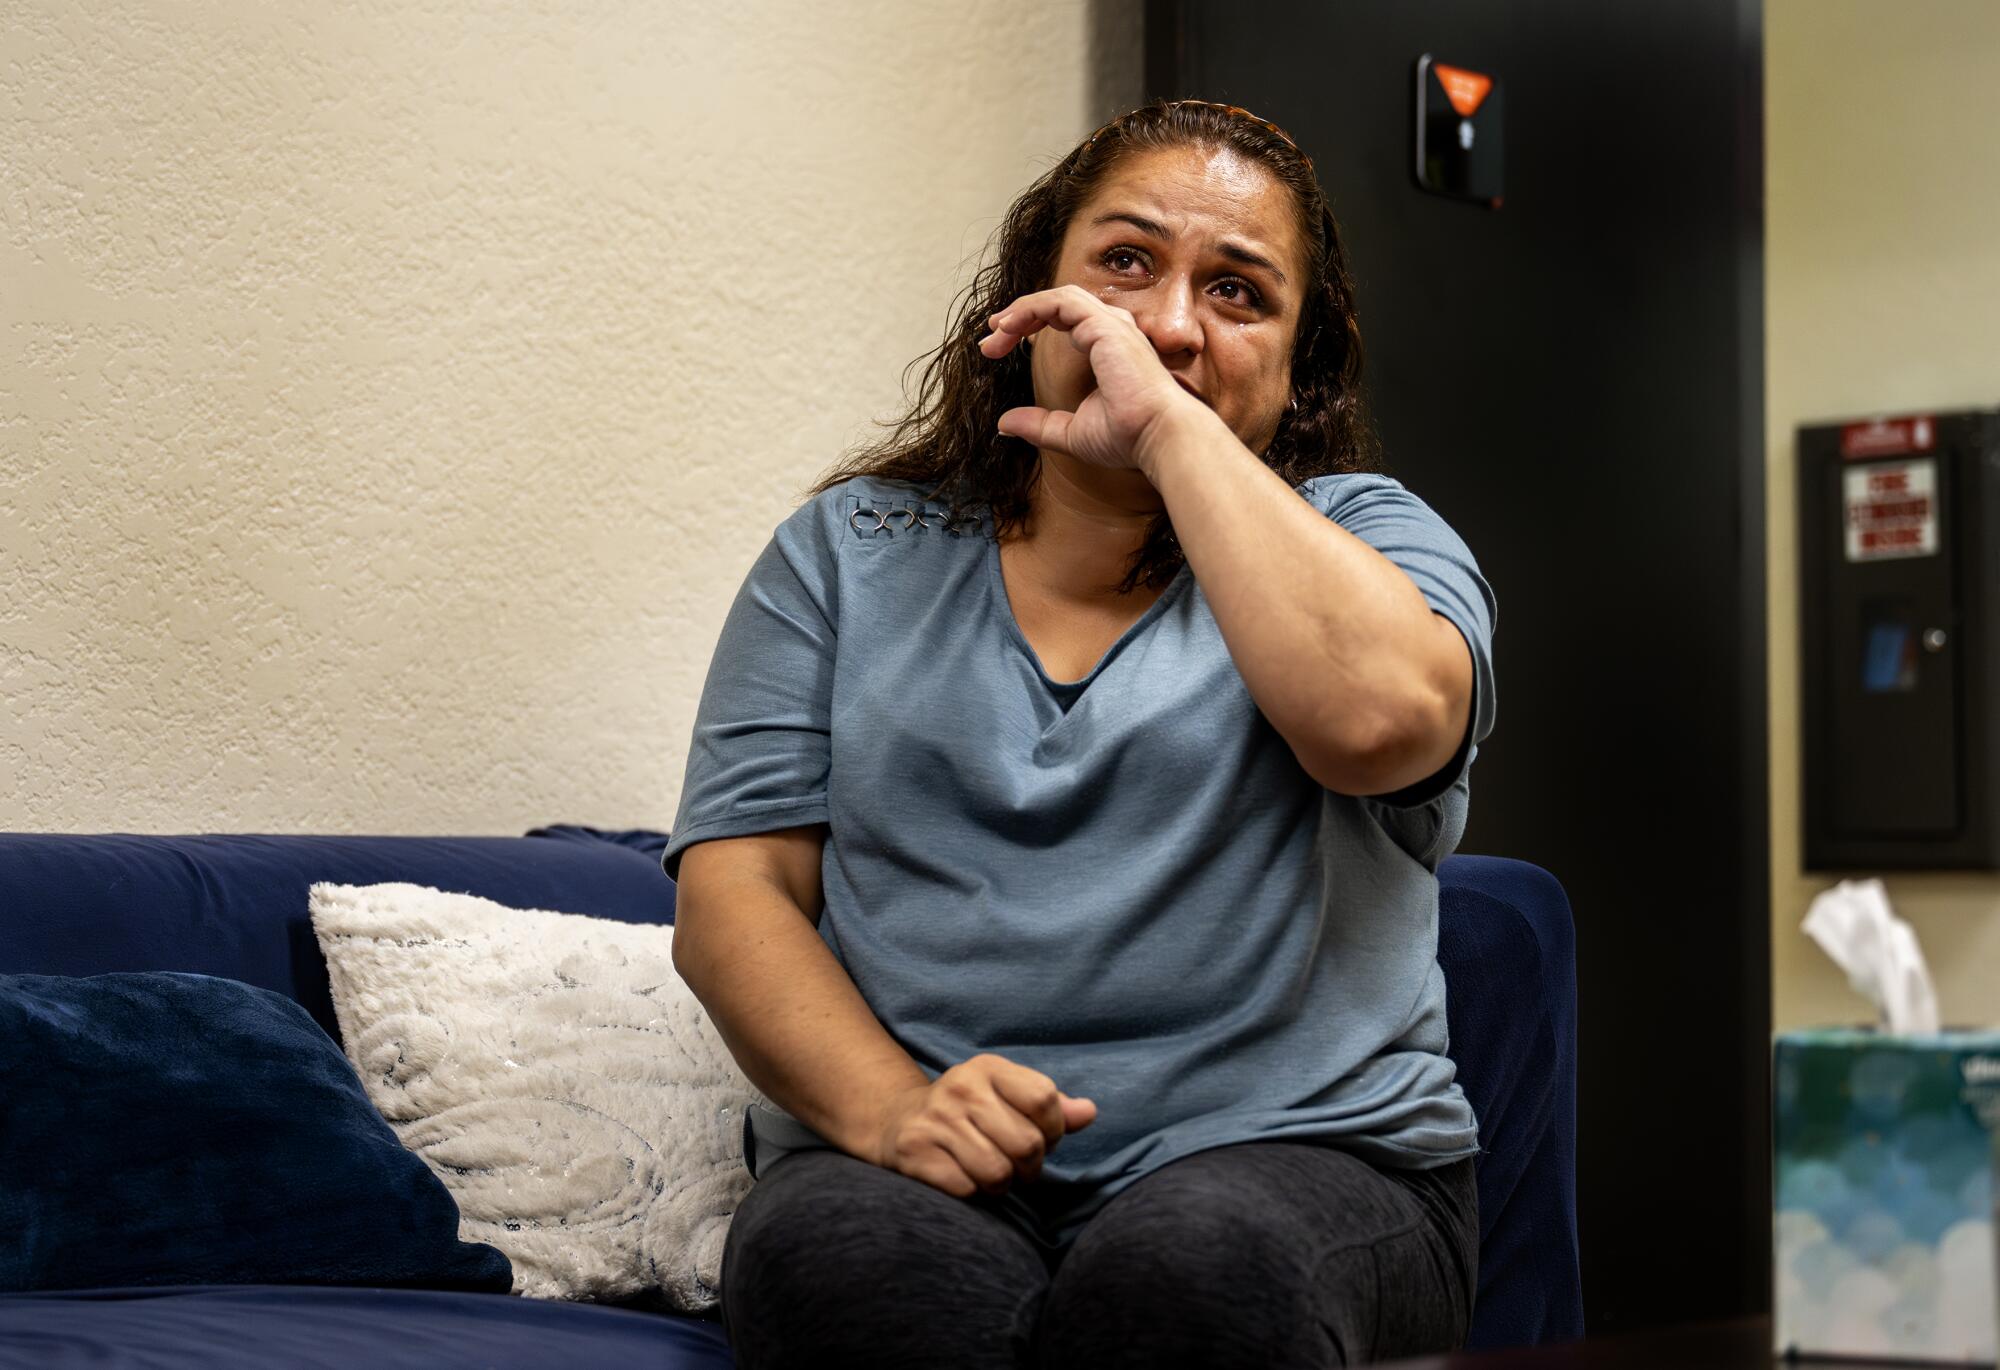 Nerry Montes est émue aux larmes alors qu'elle est assise sur un canapé.